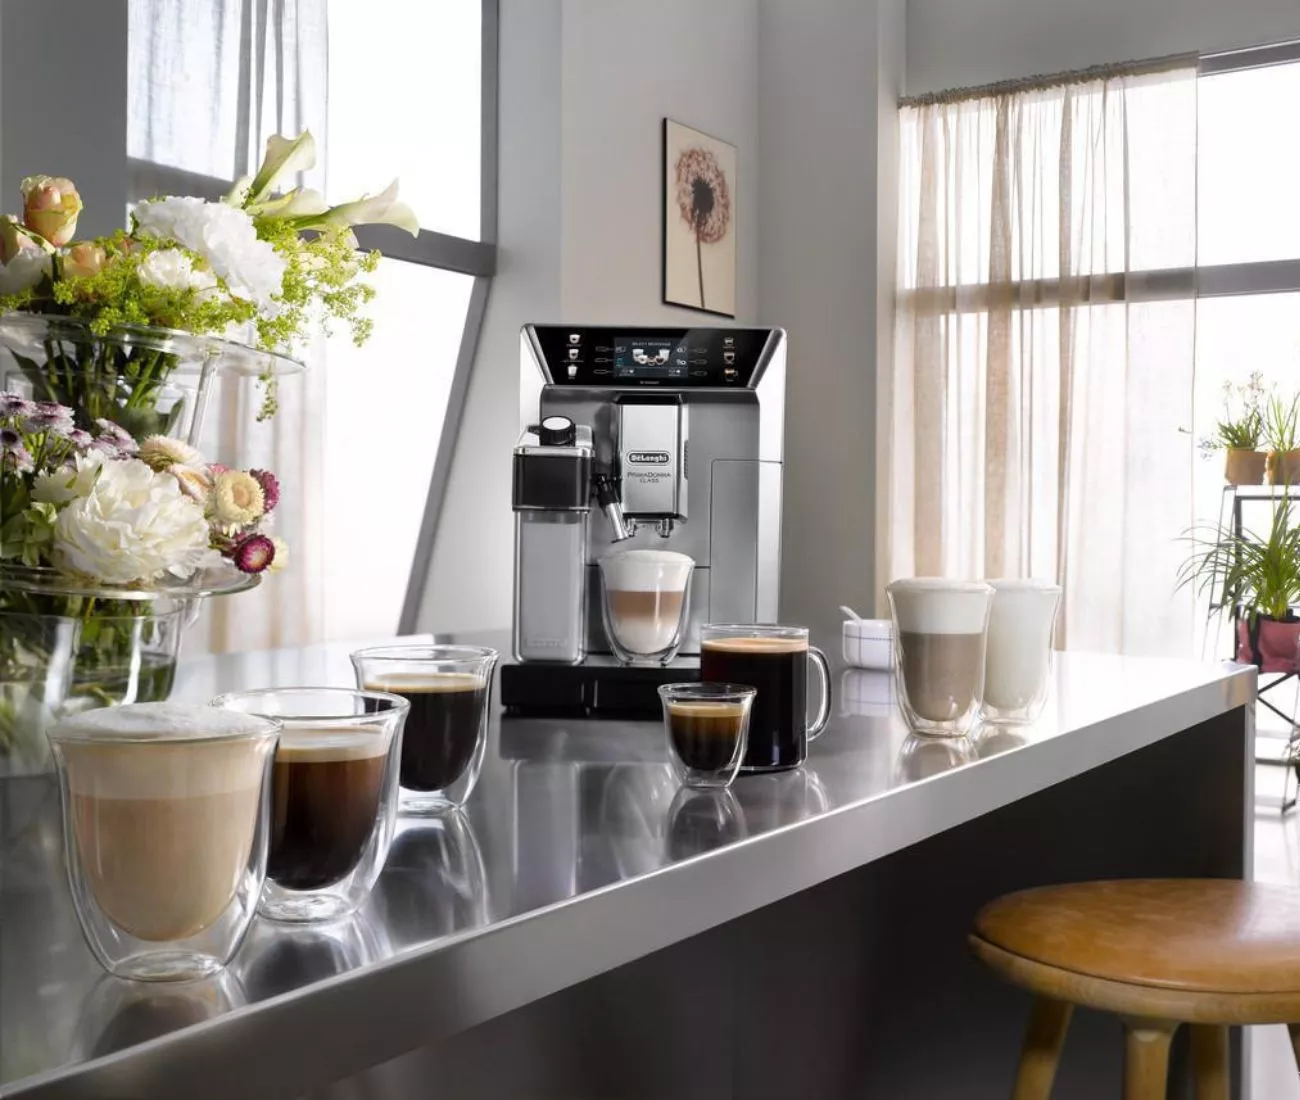 Prístroj De'Longhi Dinamica pripraví kávu podľa 10 receptov.